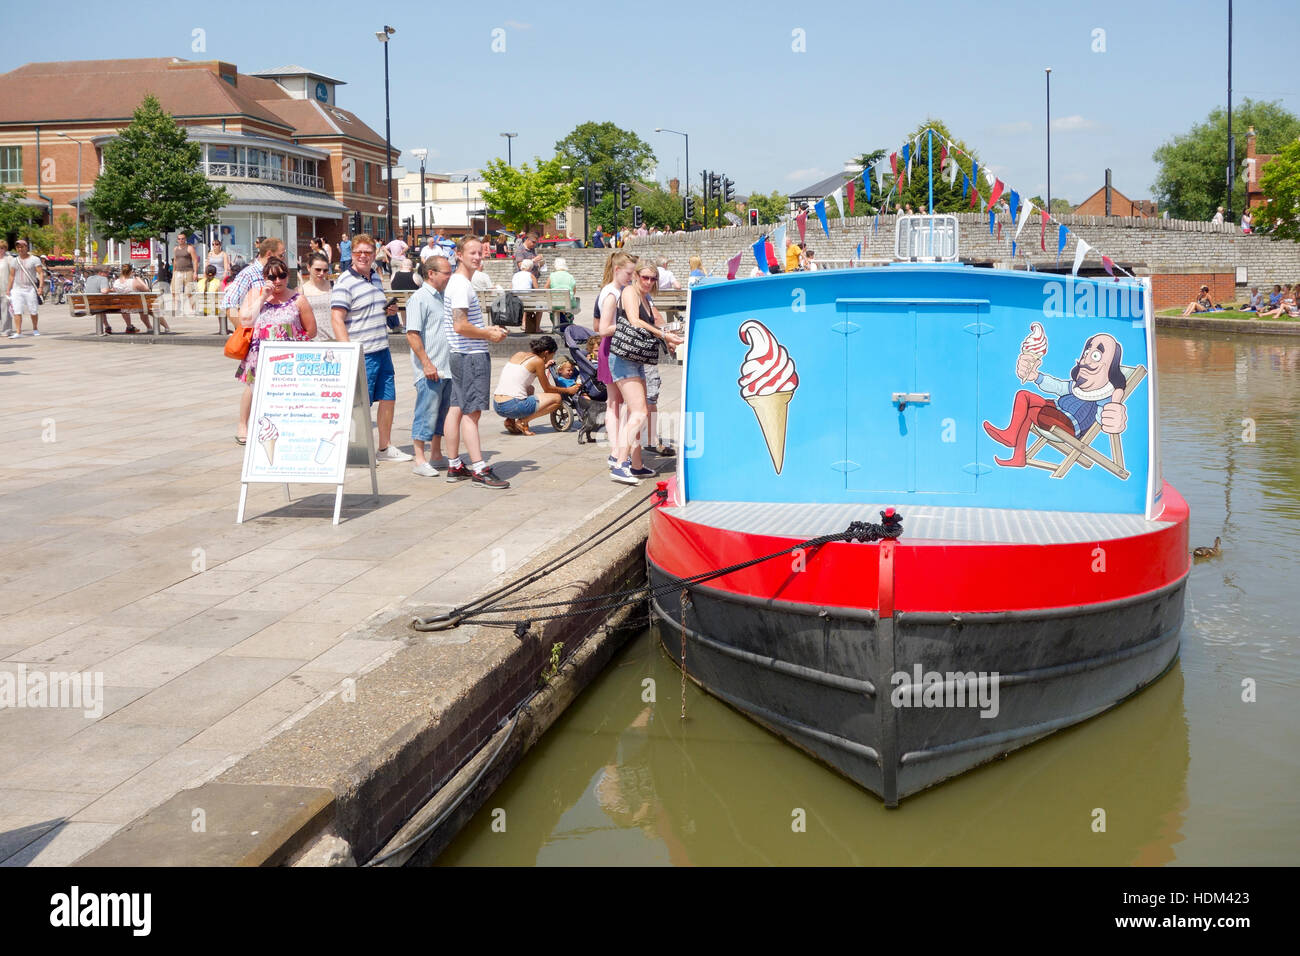 Menschen kaufen Eis aus einer schwimmenden Eisdiele am Fluss Avon, Stratford Warwickshire, England, UK Stockfoto